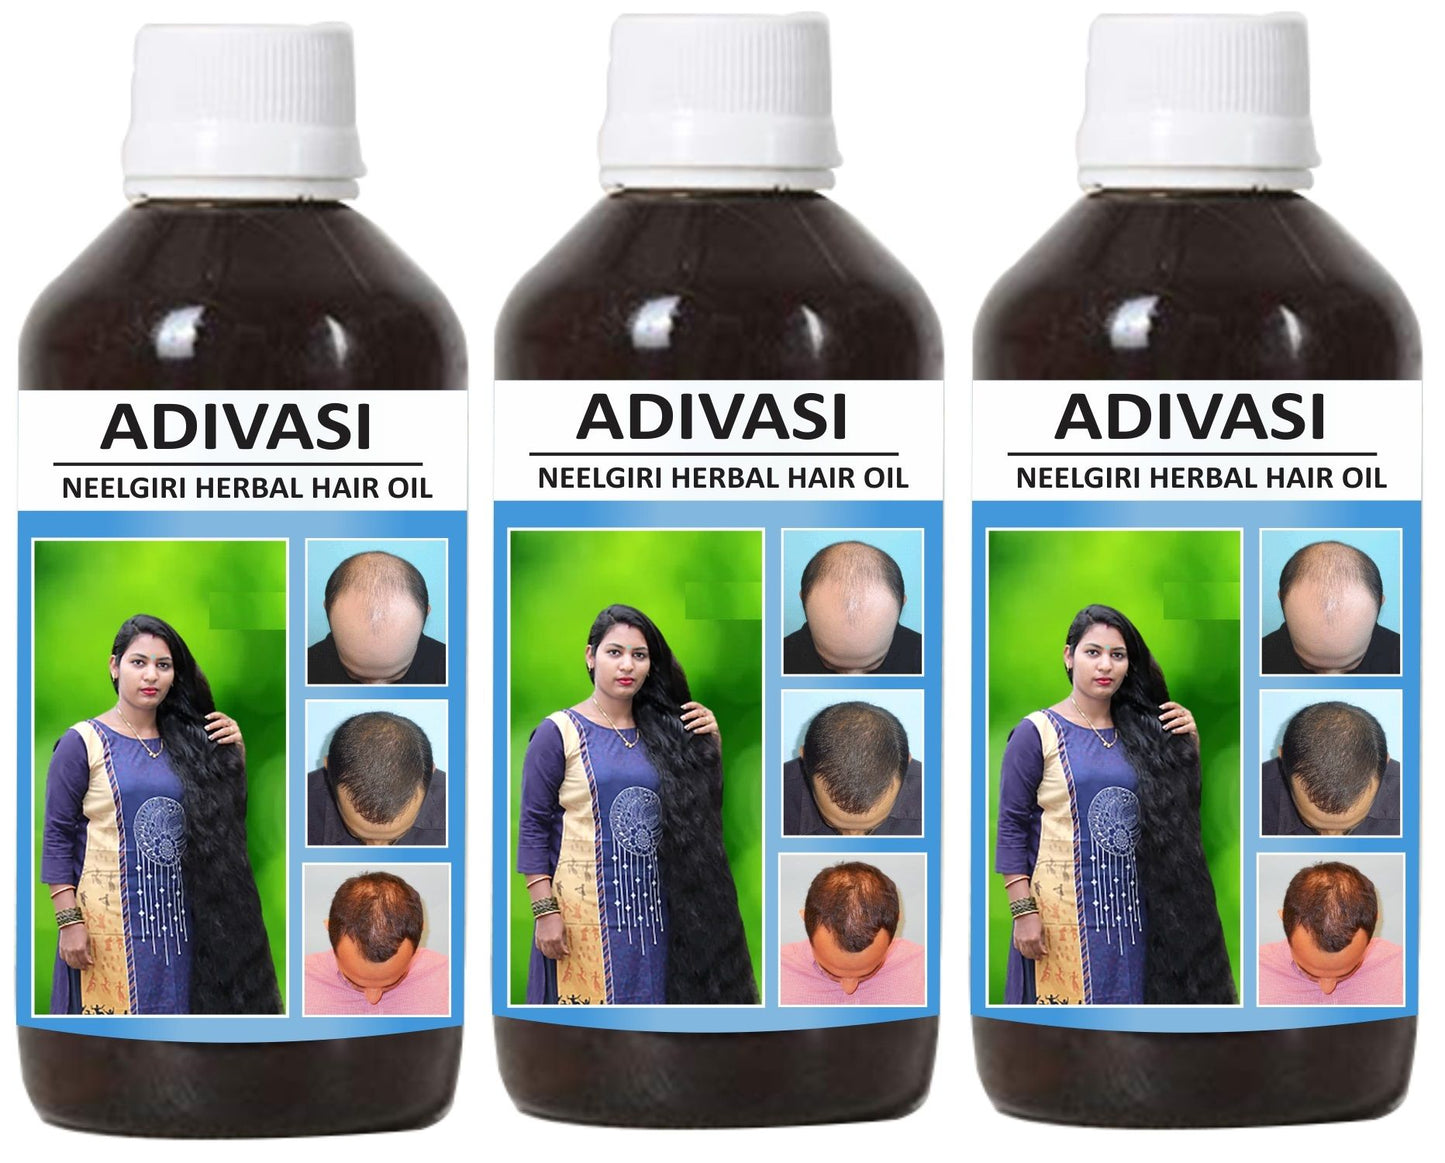 Adivasi Neelgiri Herbal Hair Oil 125ML (Pack of 3) - Deal IND.